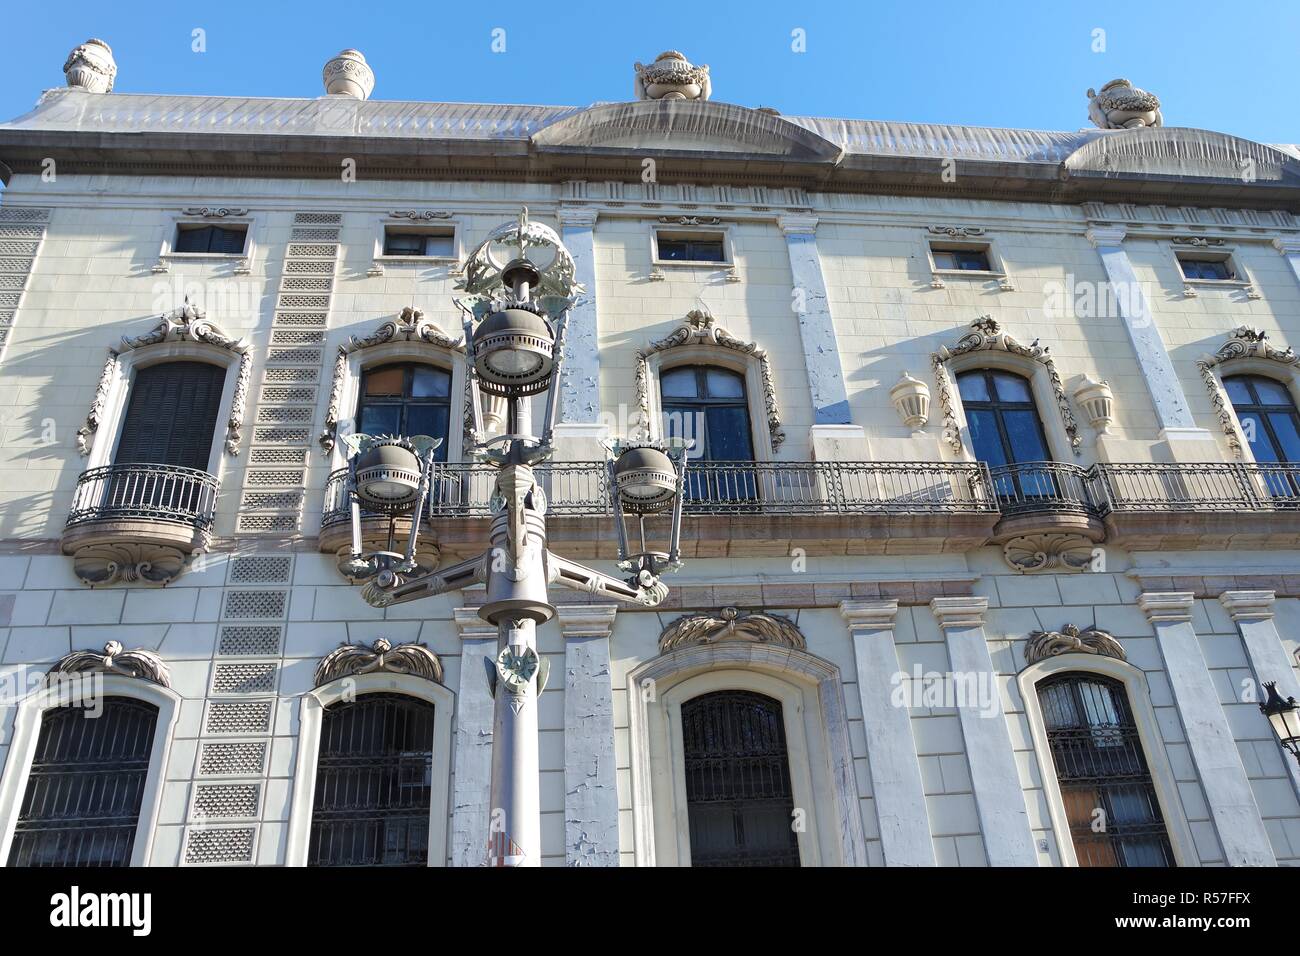 historic architecture in barcelona Stock Photo